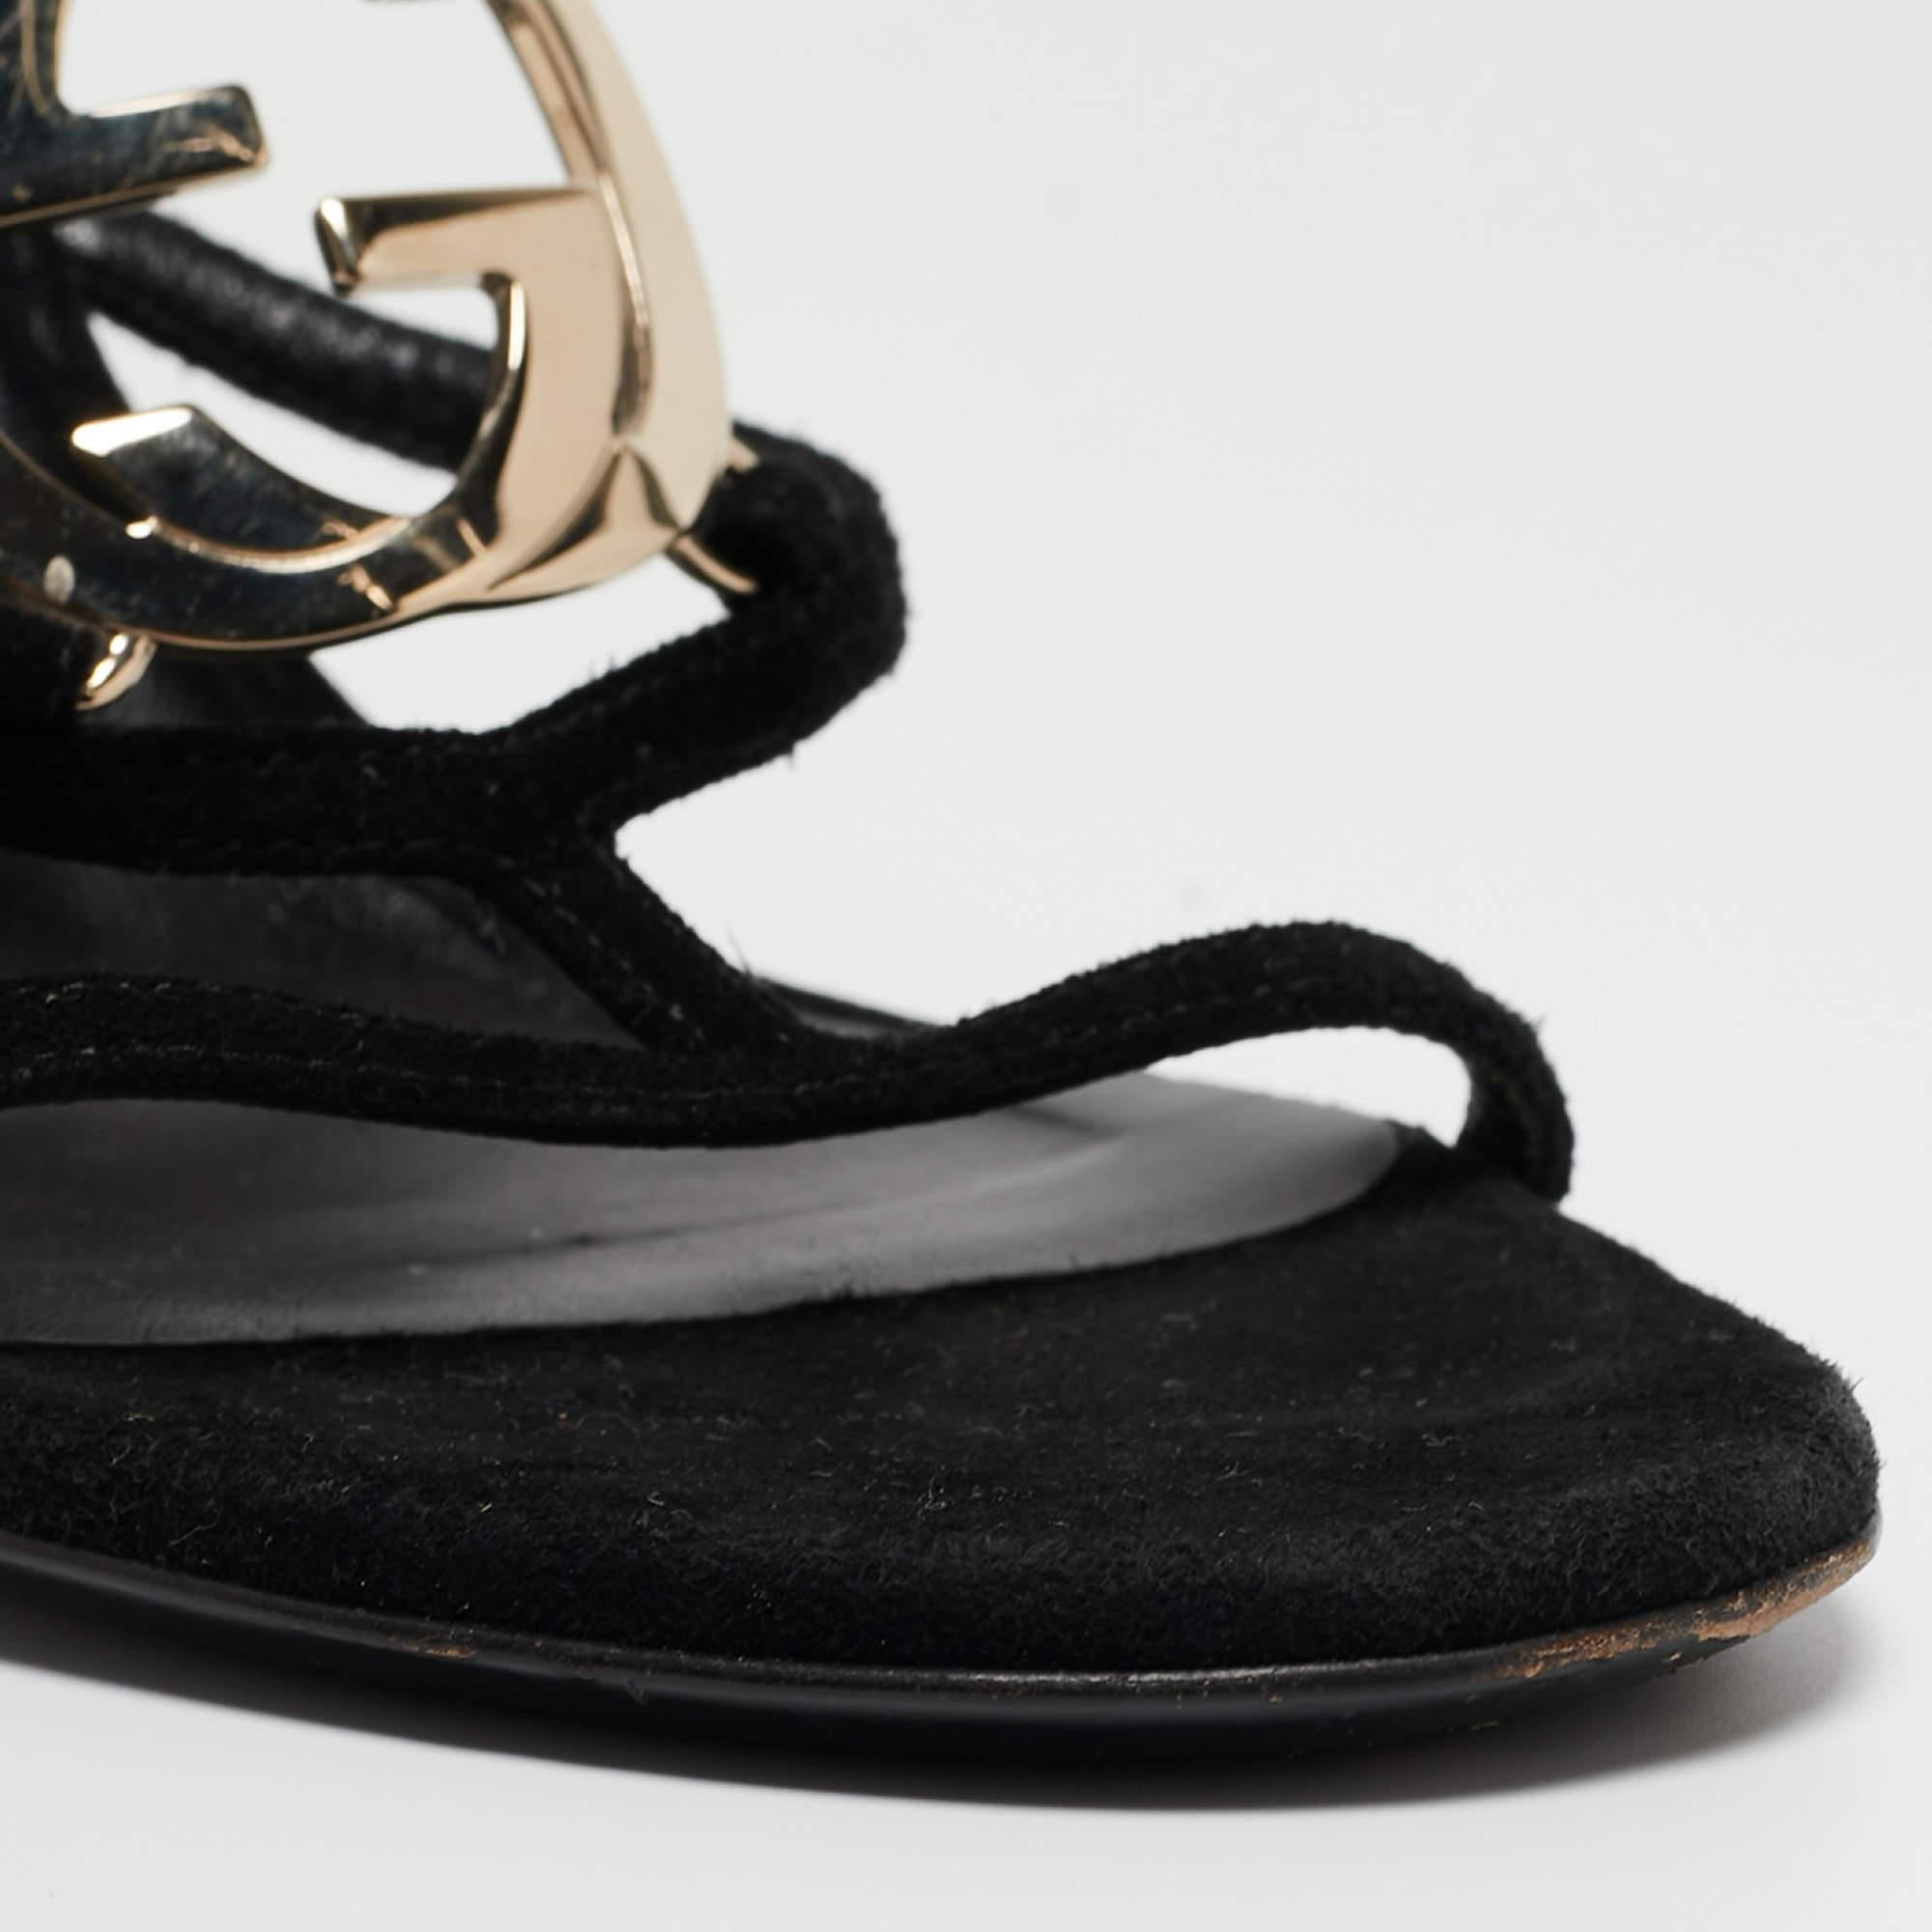 Gucci Black Suede Interlocking G Strappy Sandals Size 38 3